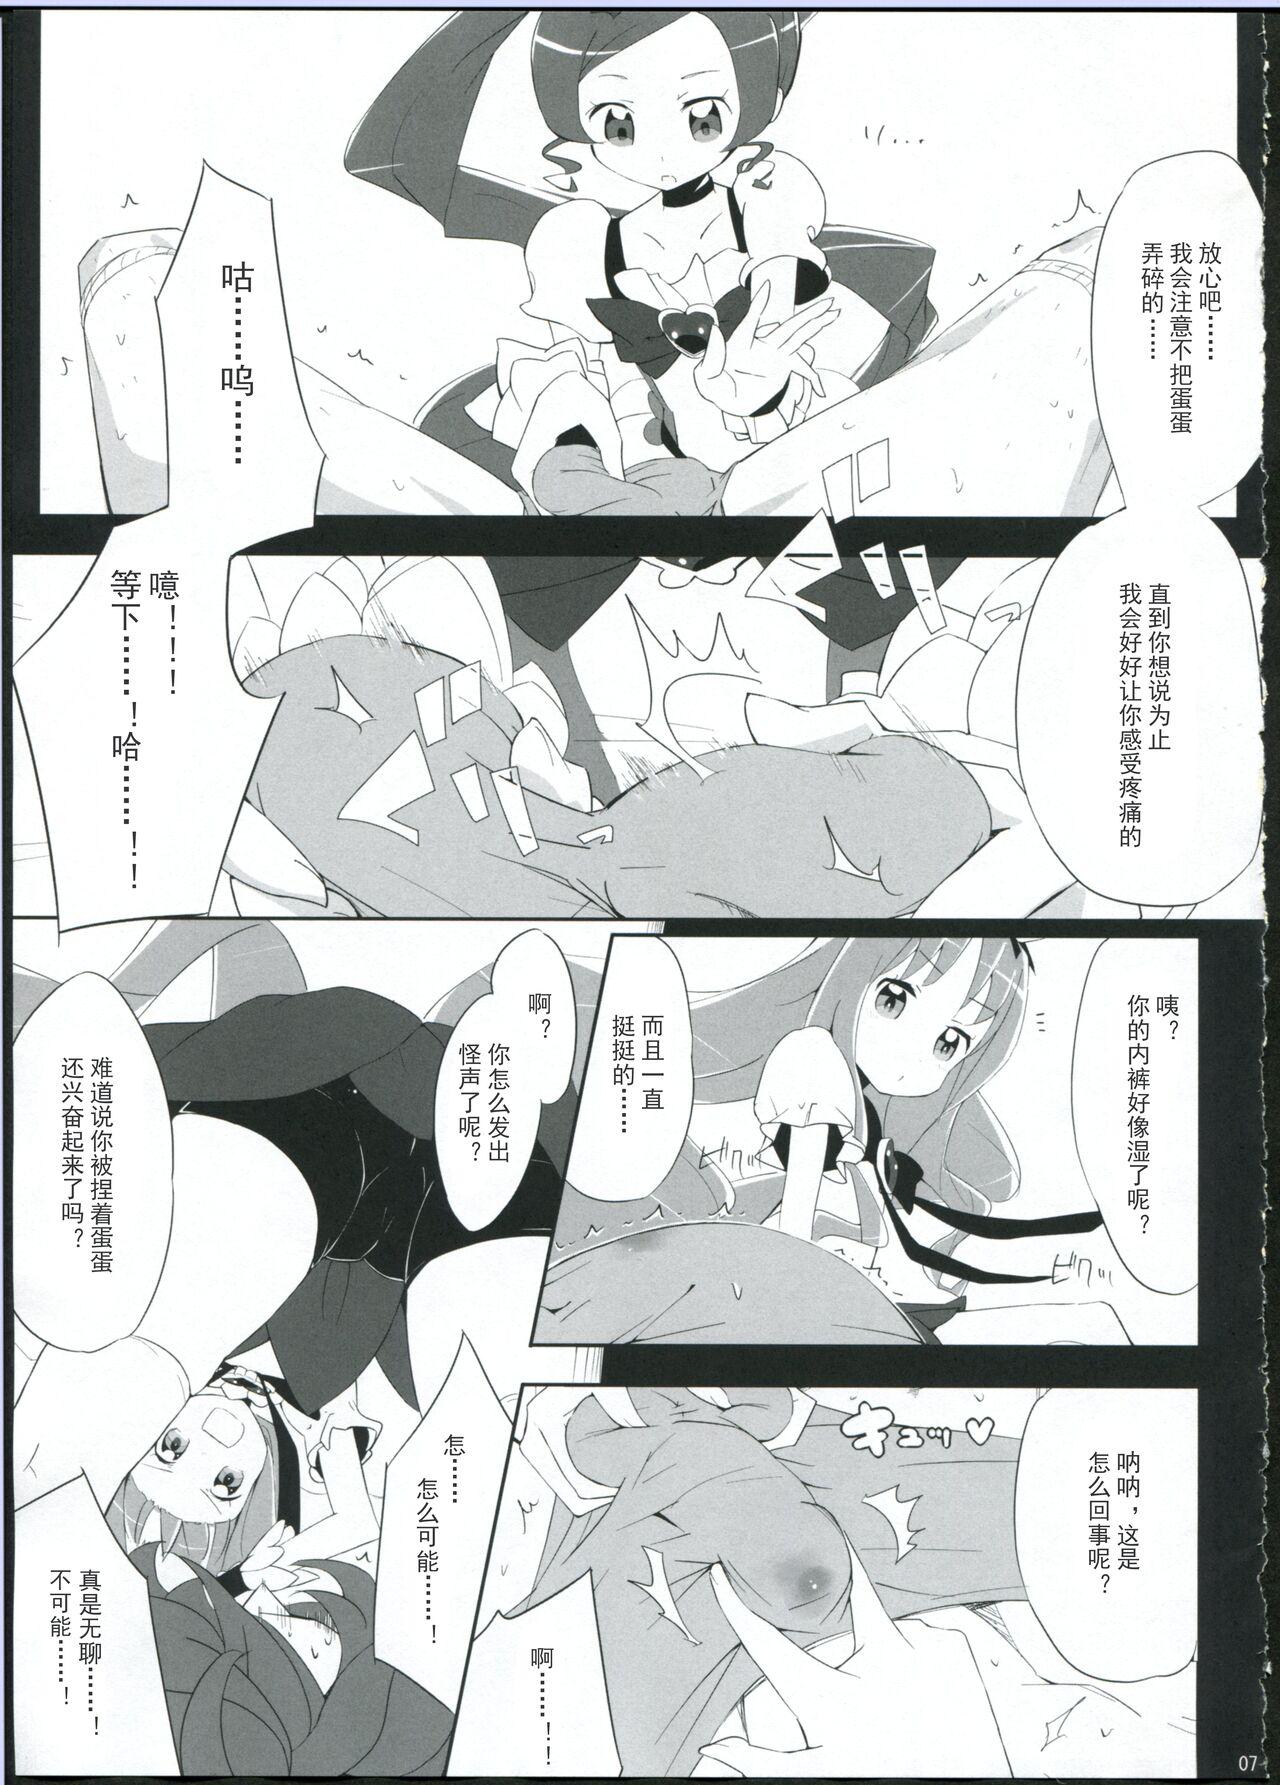 Swingers Keritsubo - Heartcatch precure Facials - Page 7